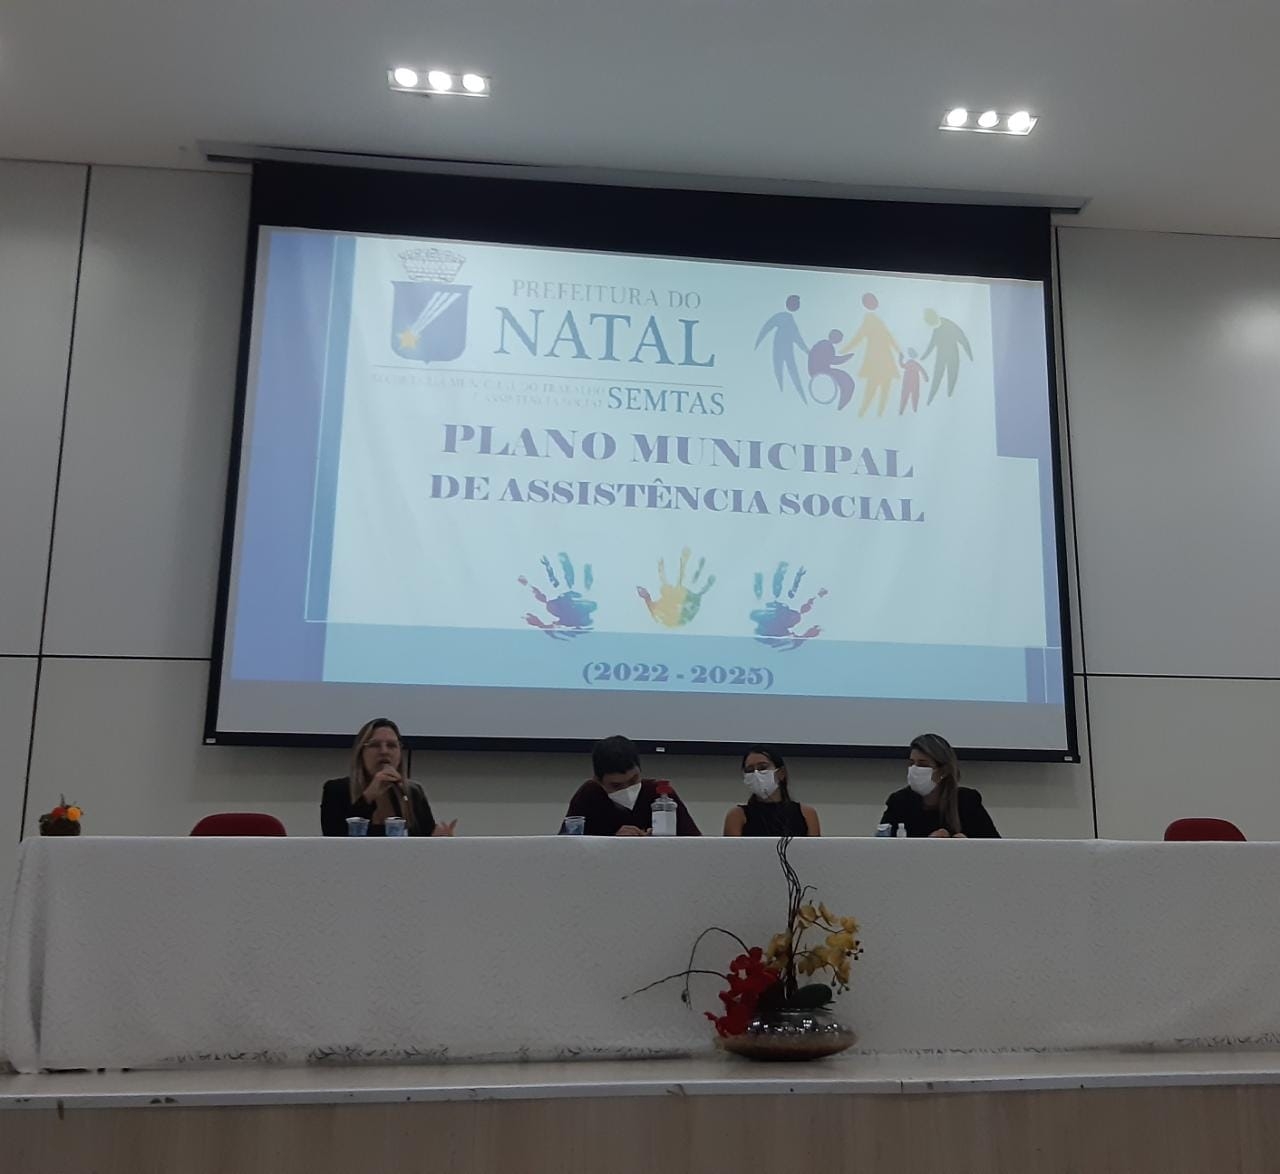 Plano Municipal de Assistência Social é debatido em seminário